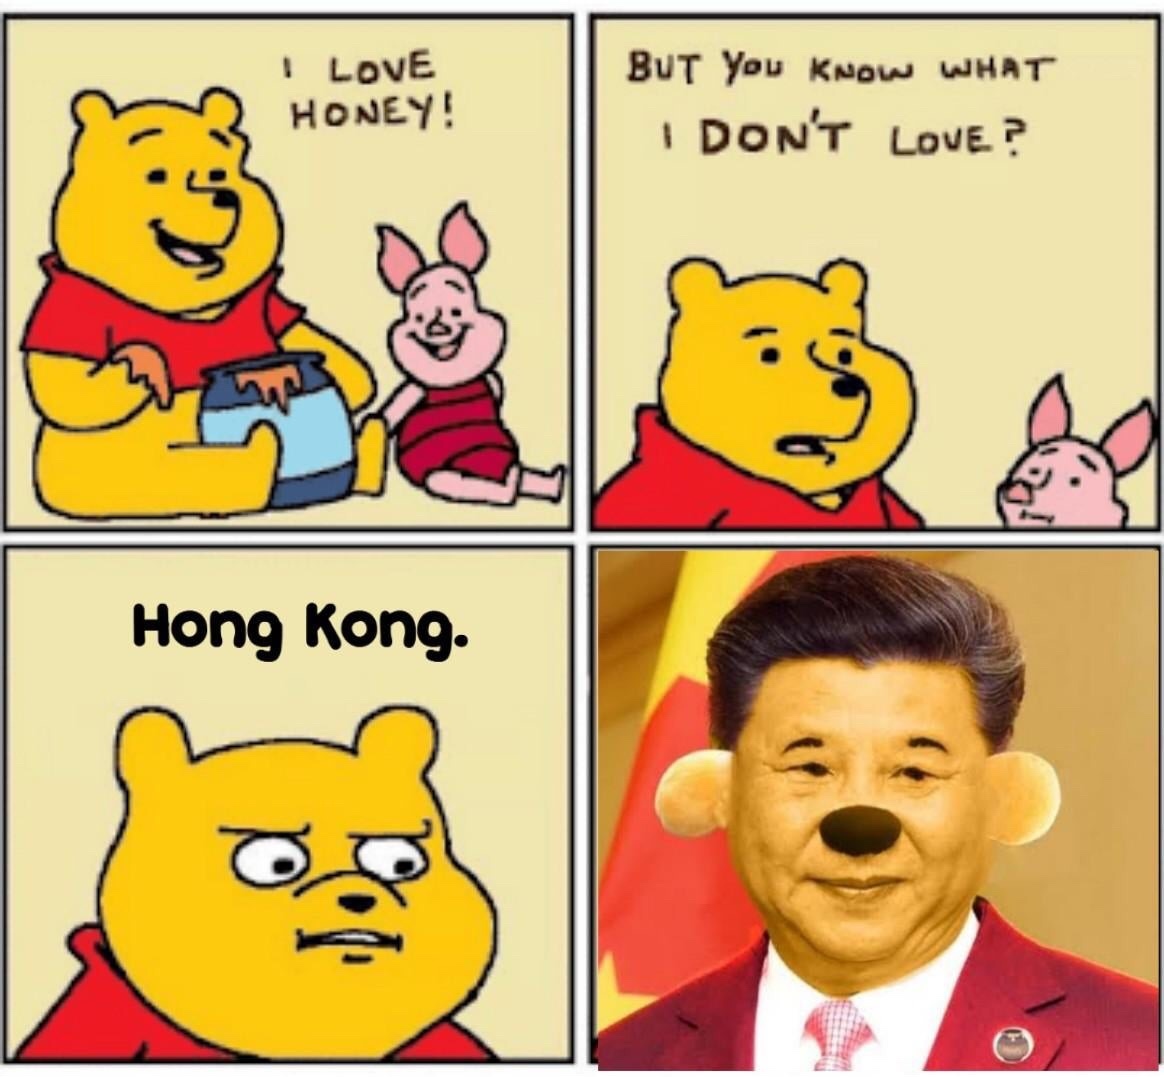 Xi Jinpooh 2 - meme